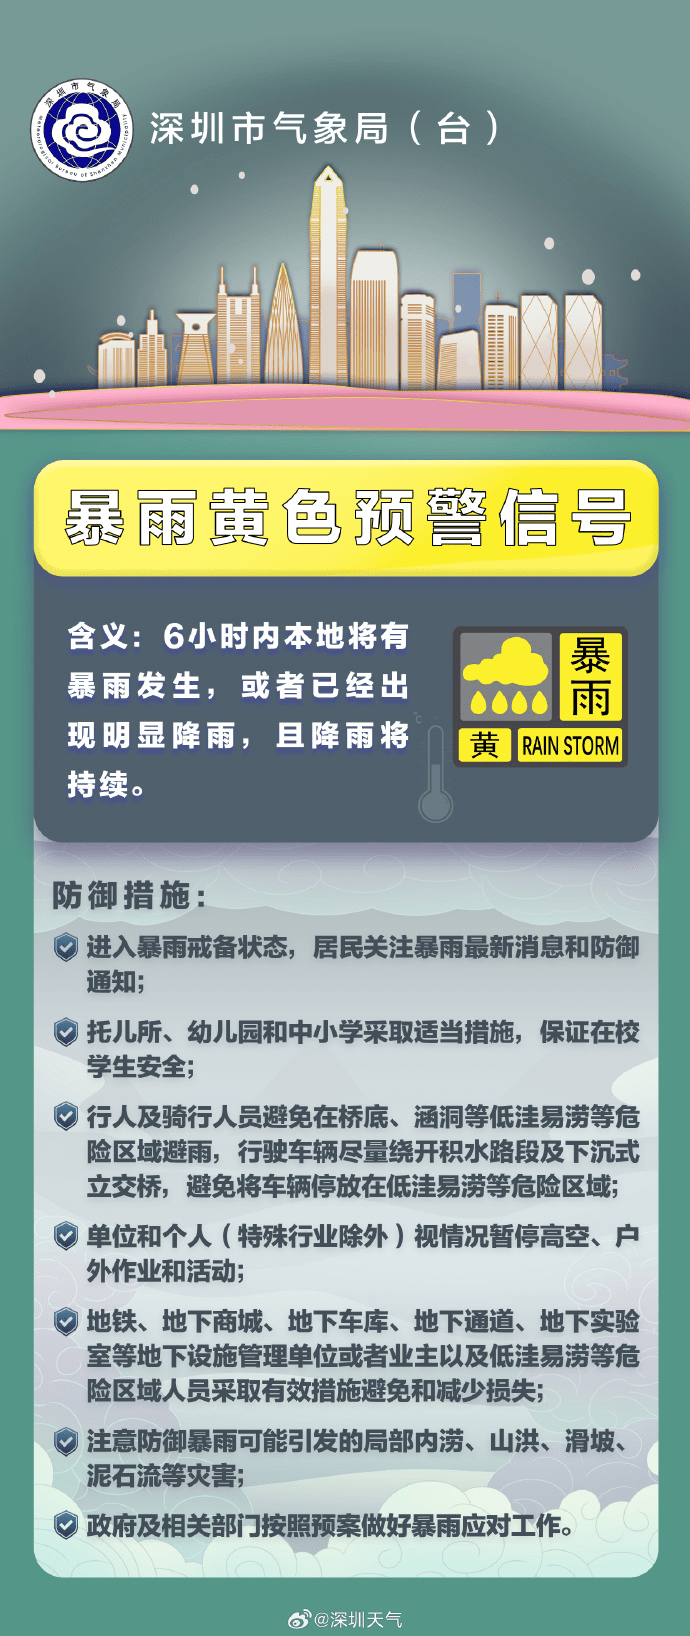 深圳市暴雨黃色預警信號擴展至全市。 深圳天氣